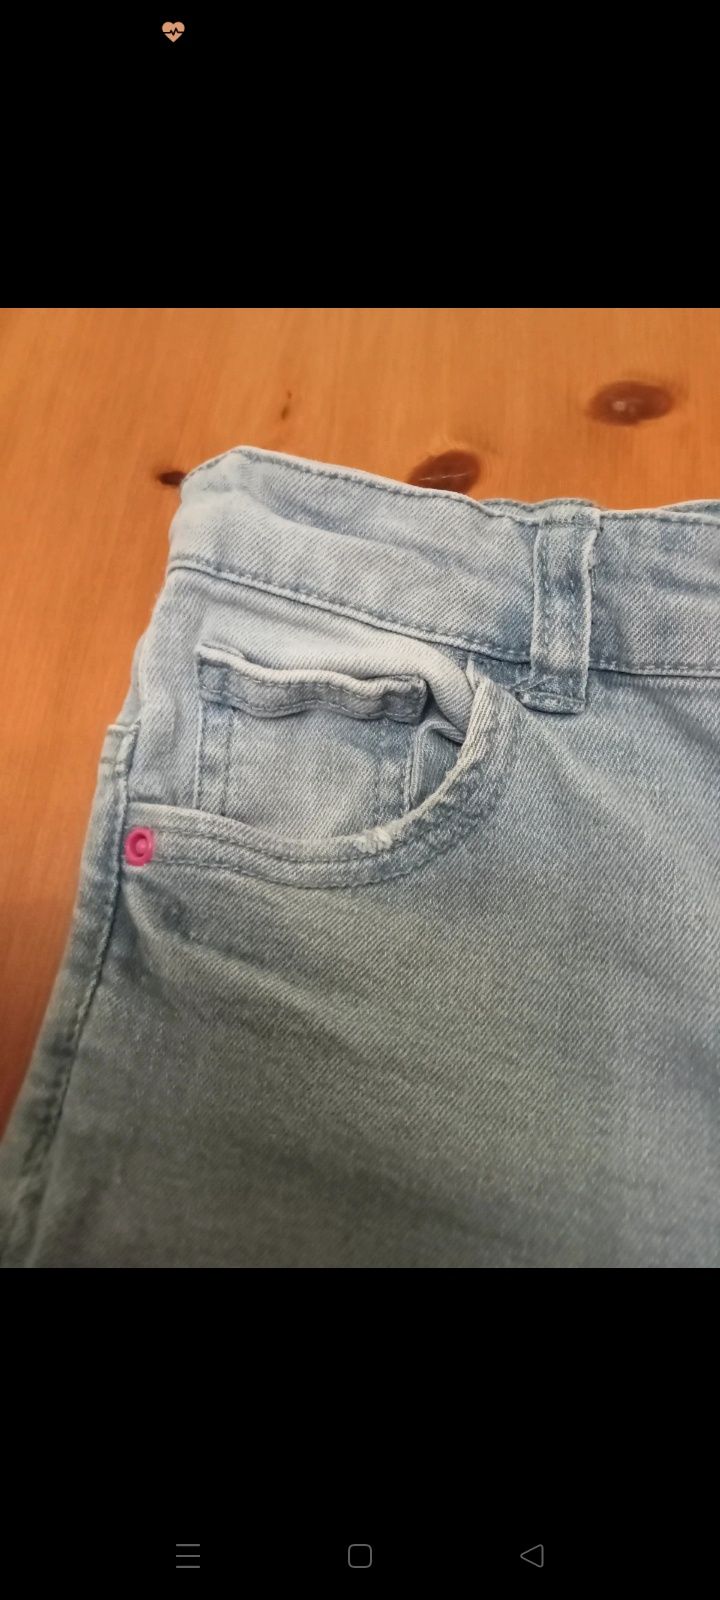 Jasne jeansy dla dziewczynki z przetarciami